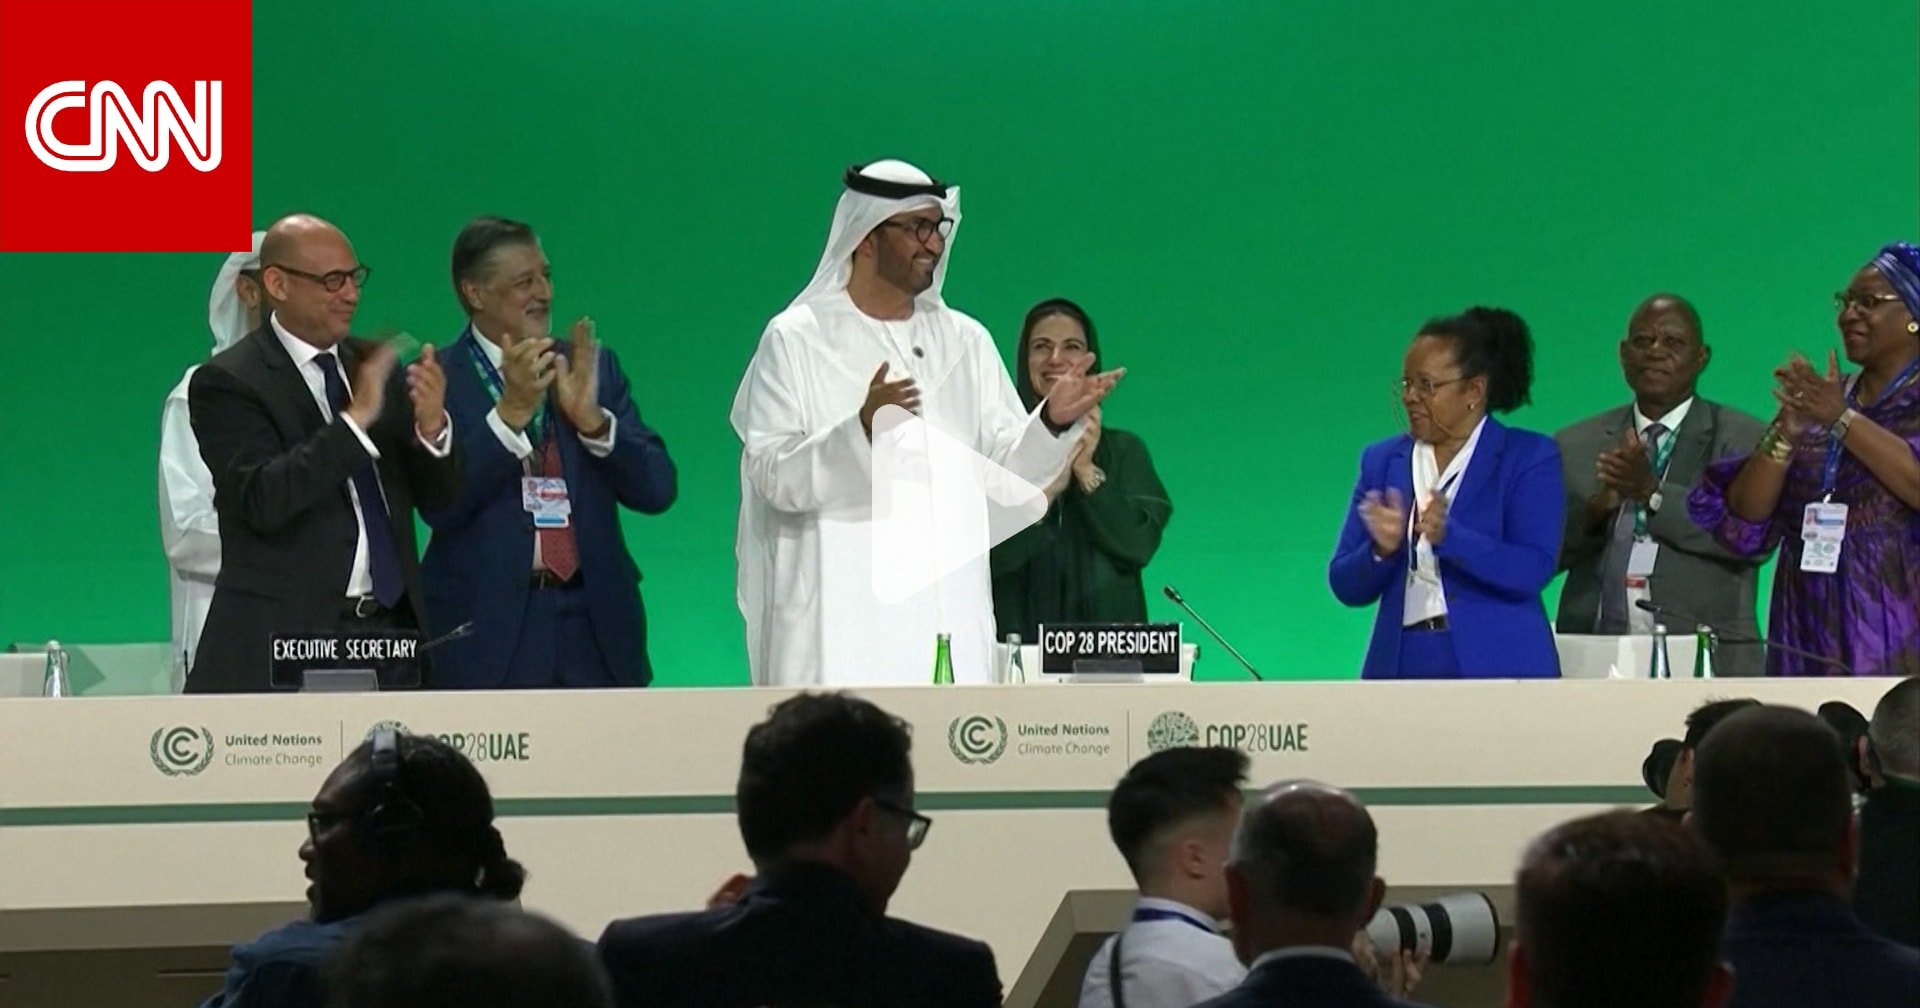 بكم تعهدت دول الإمارات والاتحاد الأوربي وأمريكا لصندوق الأضرار المناخية في مؤتمر "كوب 28"؟